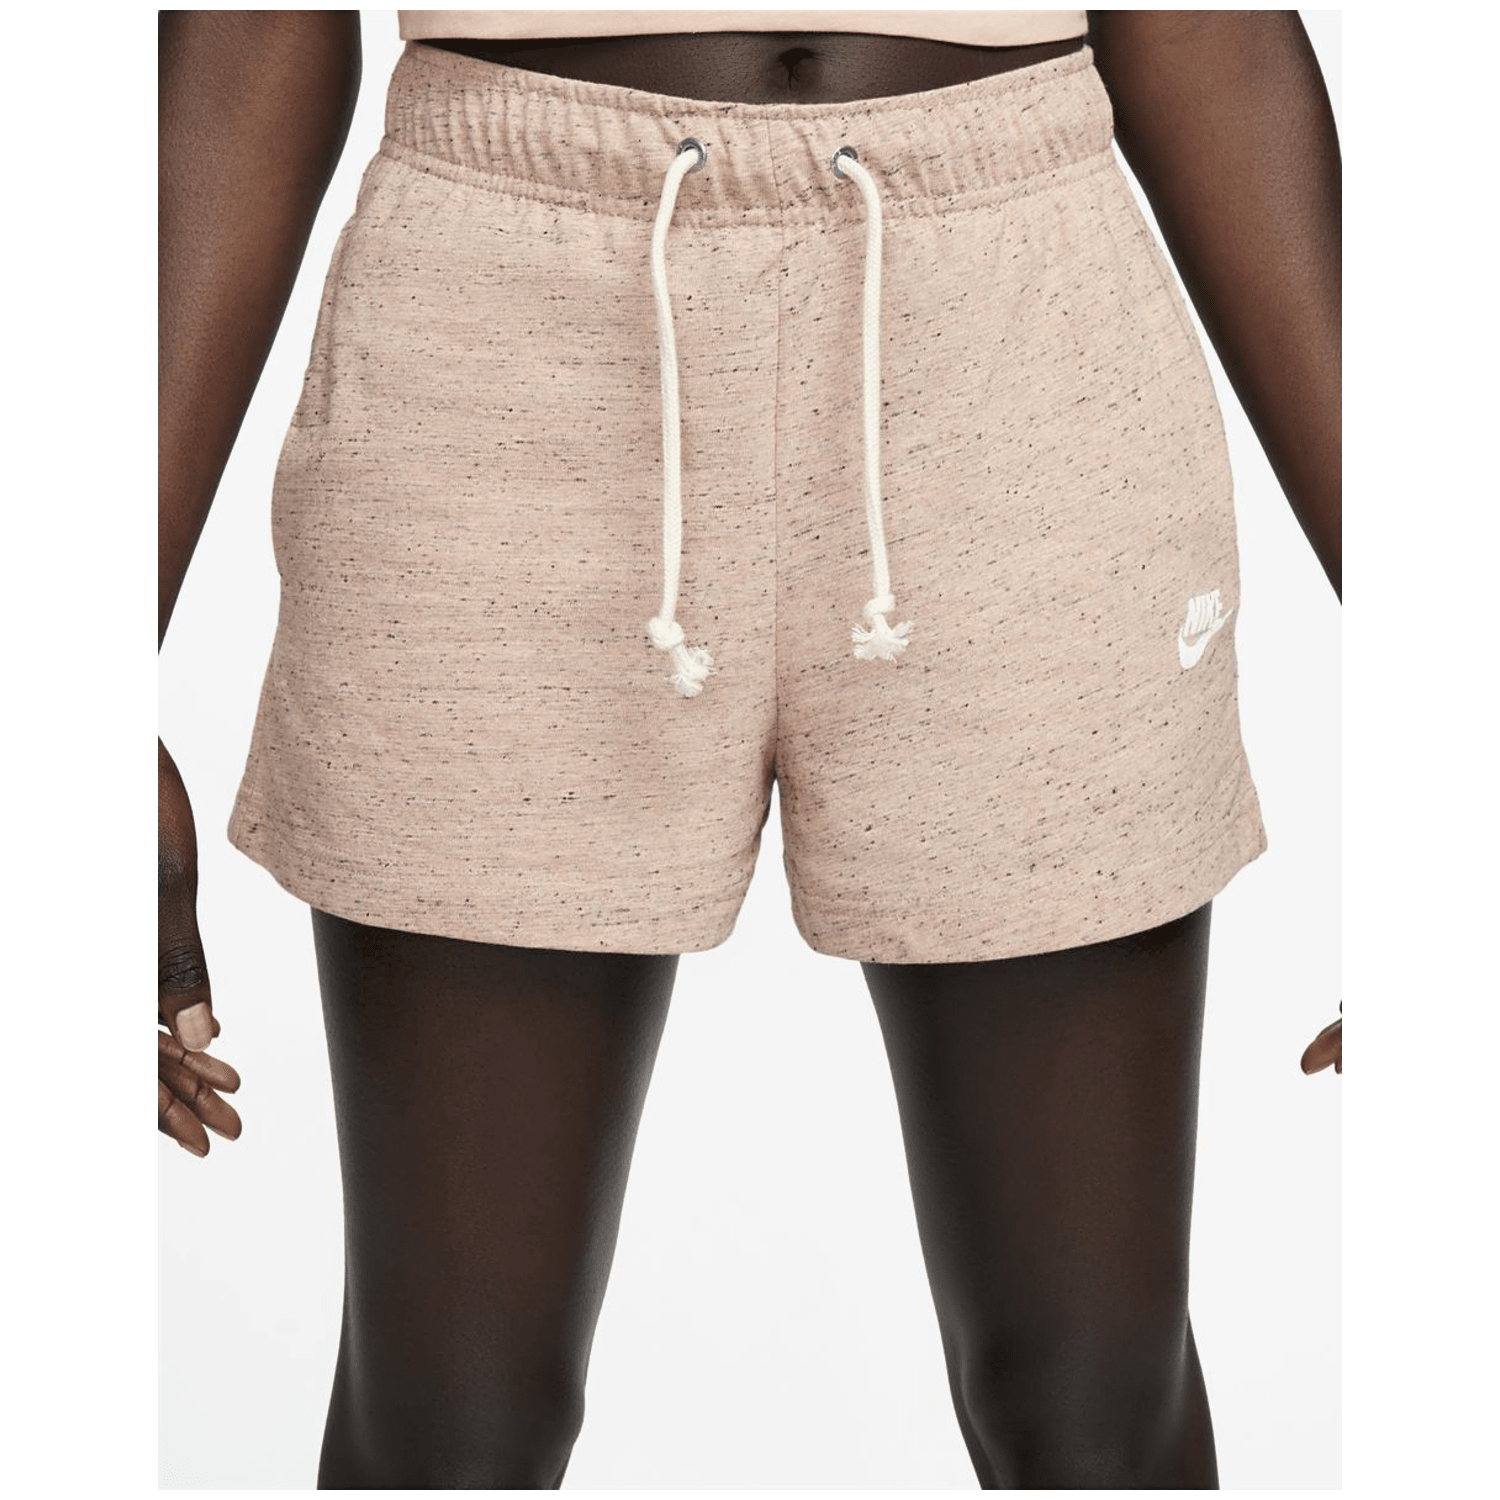 Nike Sportswear Gym Vintage Damen Shorts